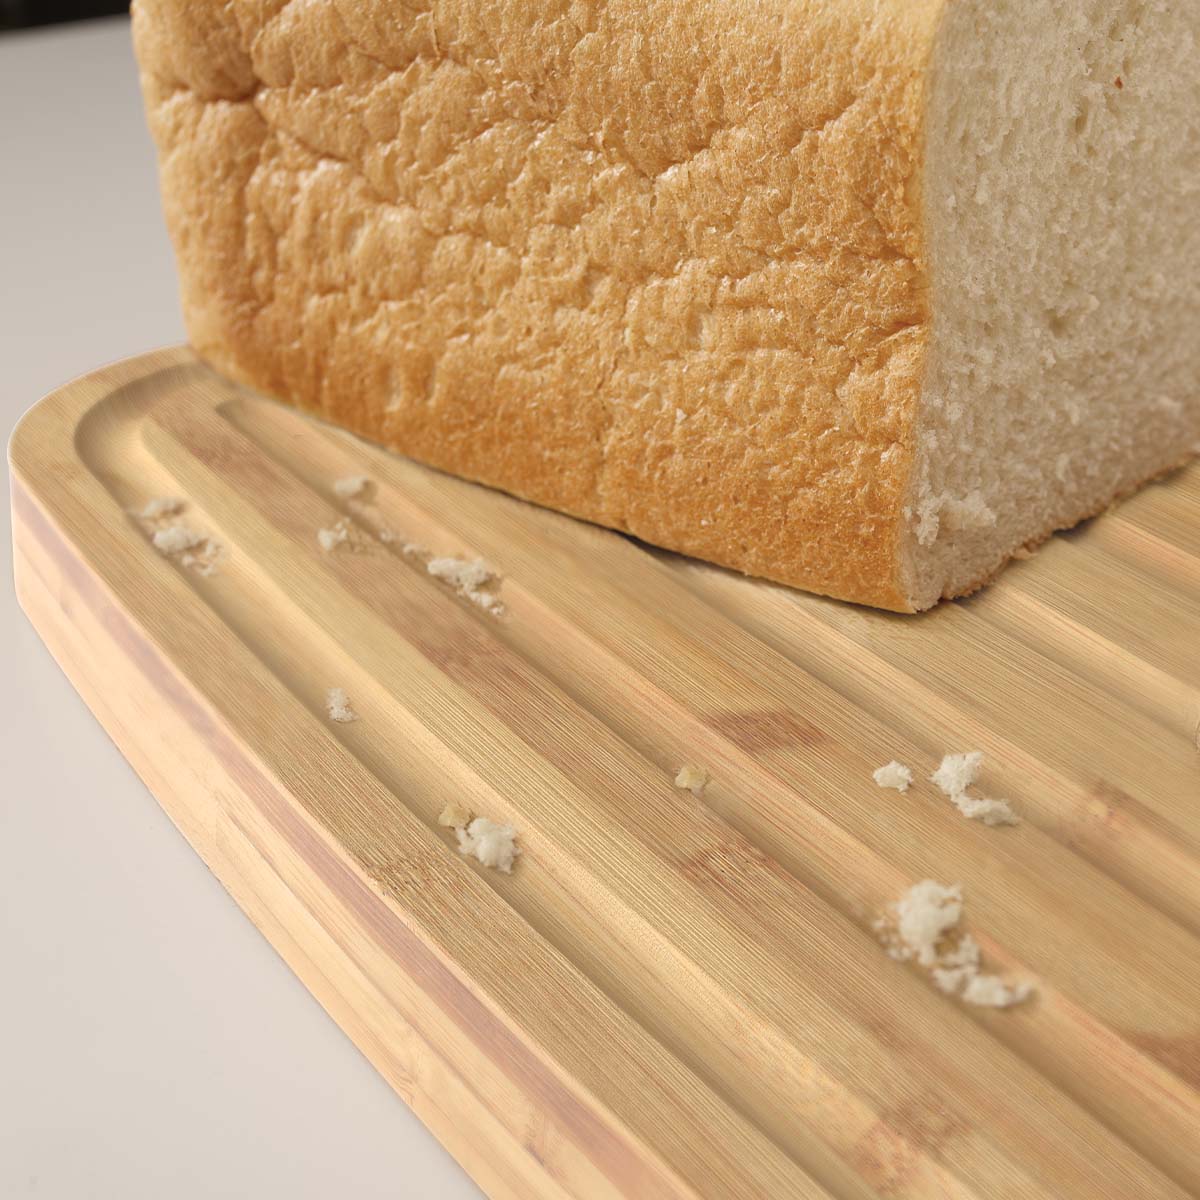 Bread Bin kutija za hljeb sa daskom za sjecenje, White